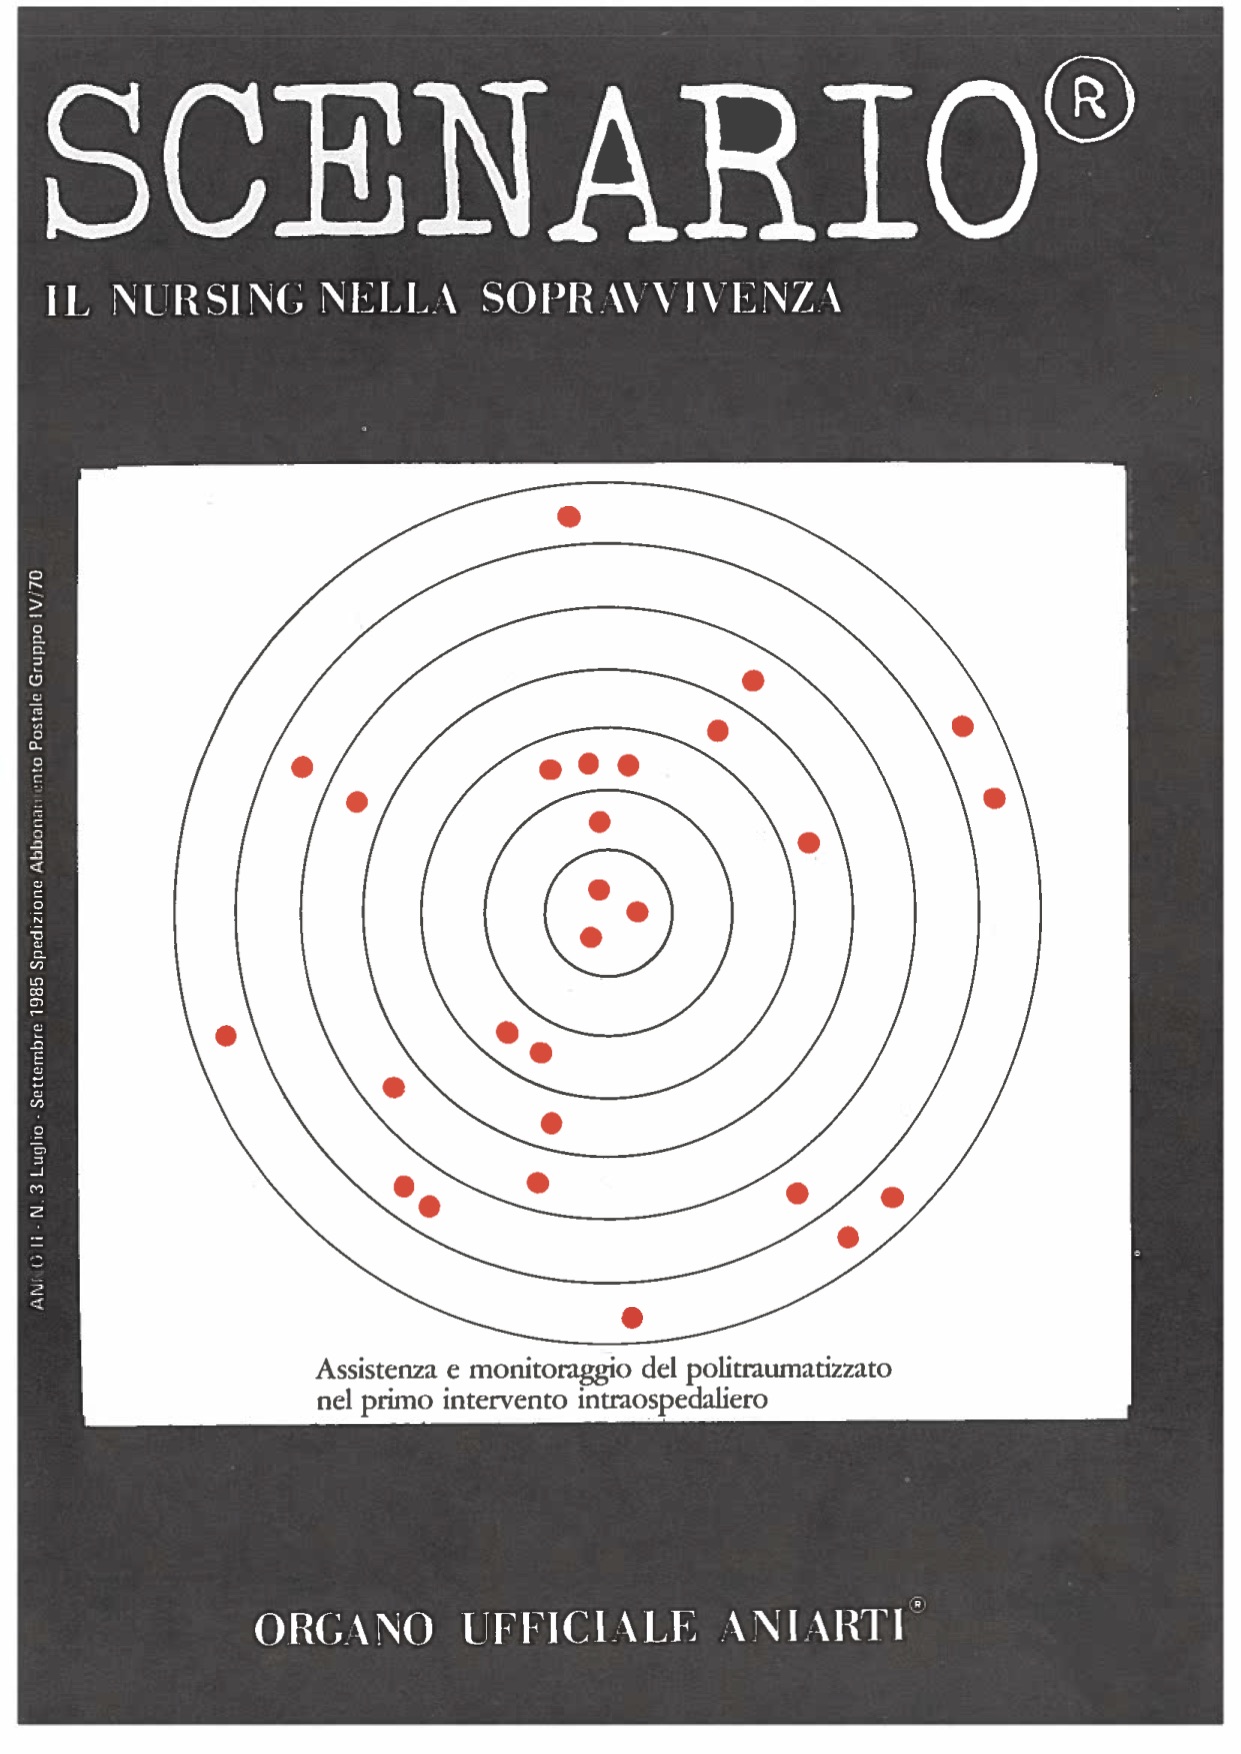 					Visualizza V. 2 N. 3 (1985): Scenario 3 1985
				